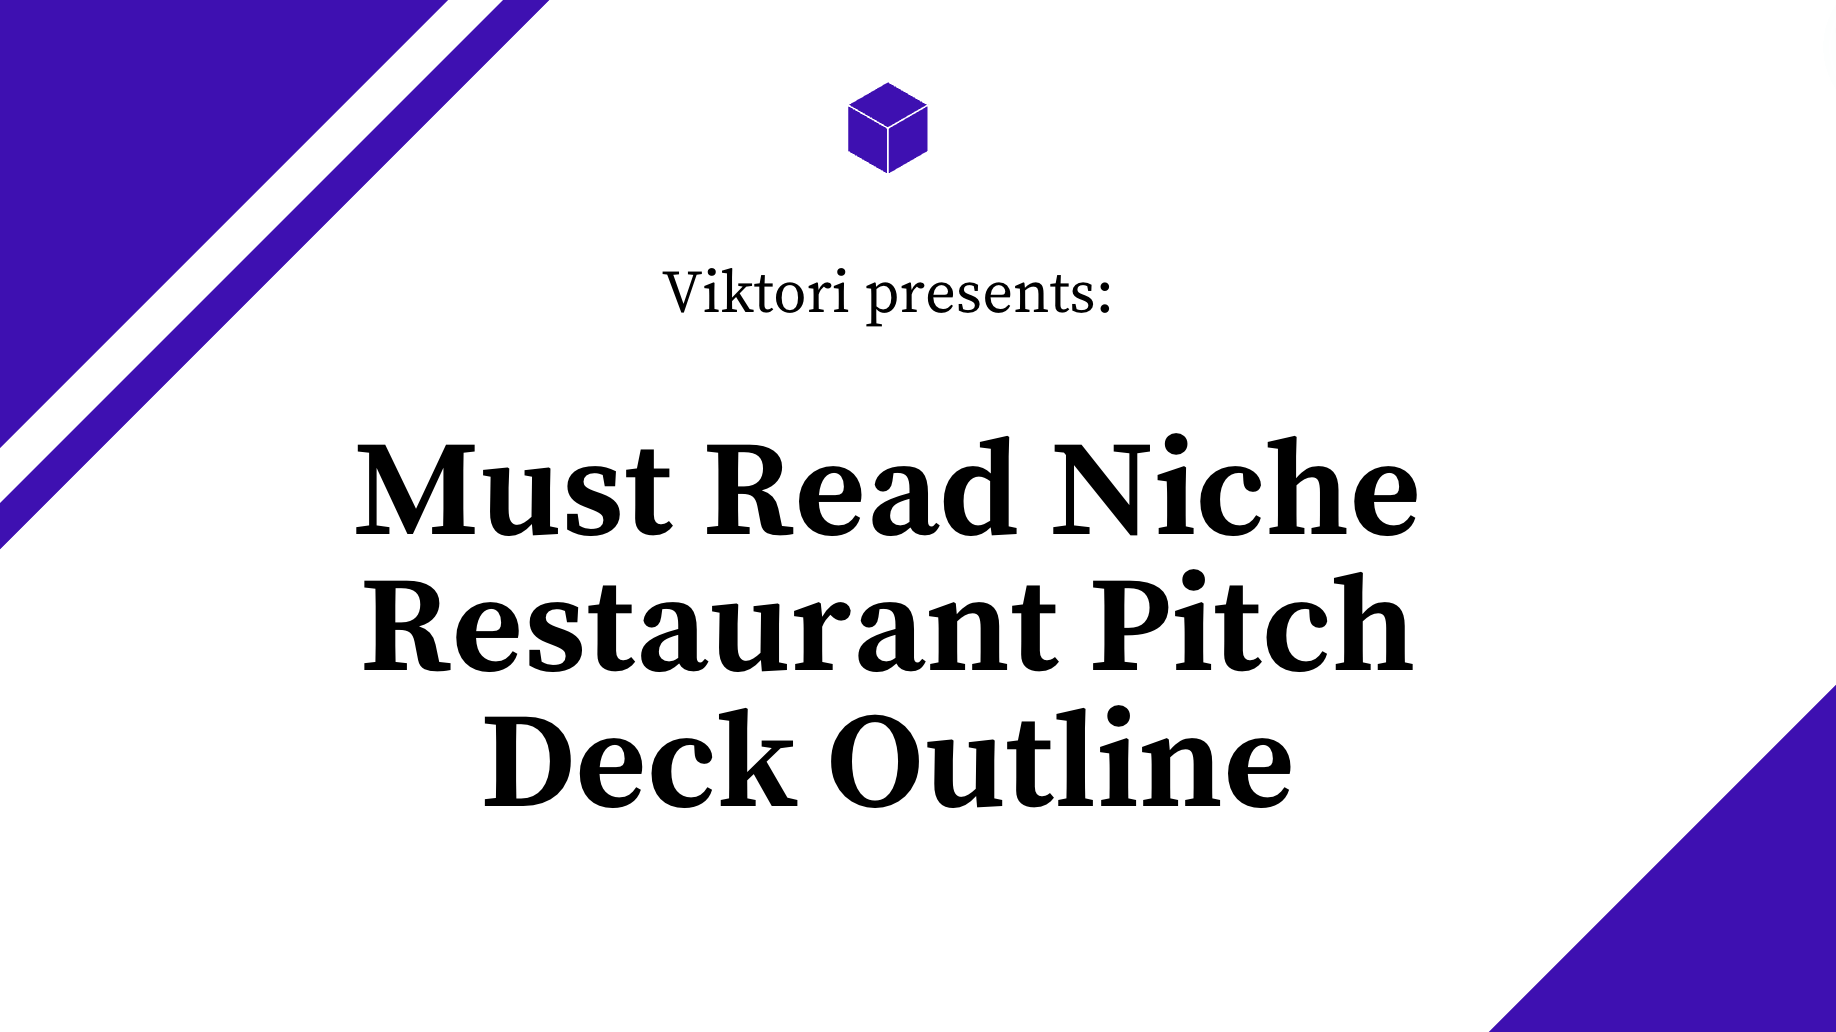 niche restaurant pitch deck outline